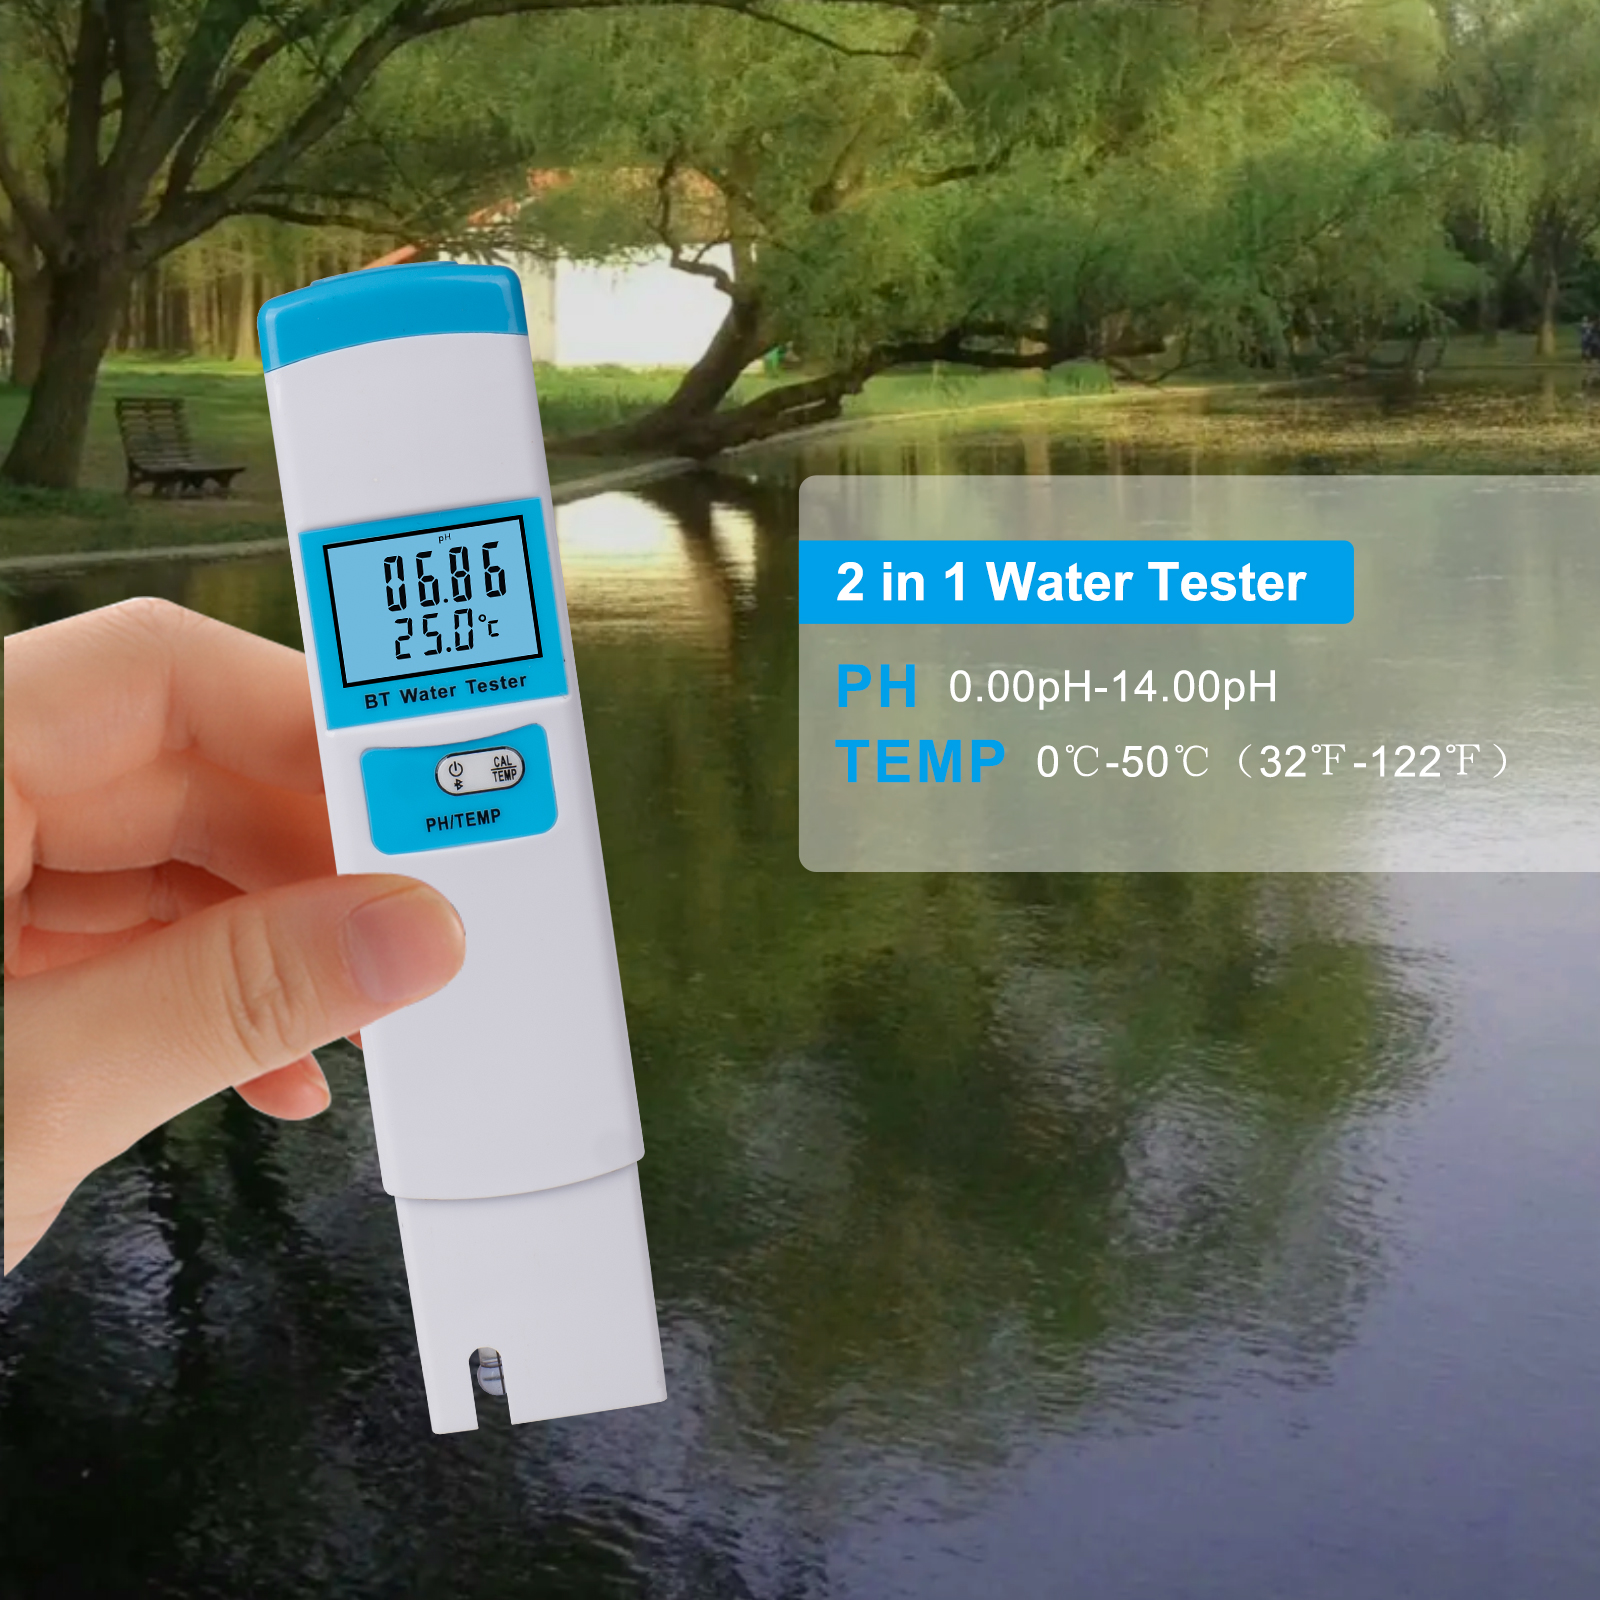 5 su 1 misuratore di test di qualità dell'acqua EC/TDS/SALT/S.G/TEMP METER acqua con retroilluminazione LCD Visualizza kit di test dell'acqua ad alta precisione